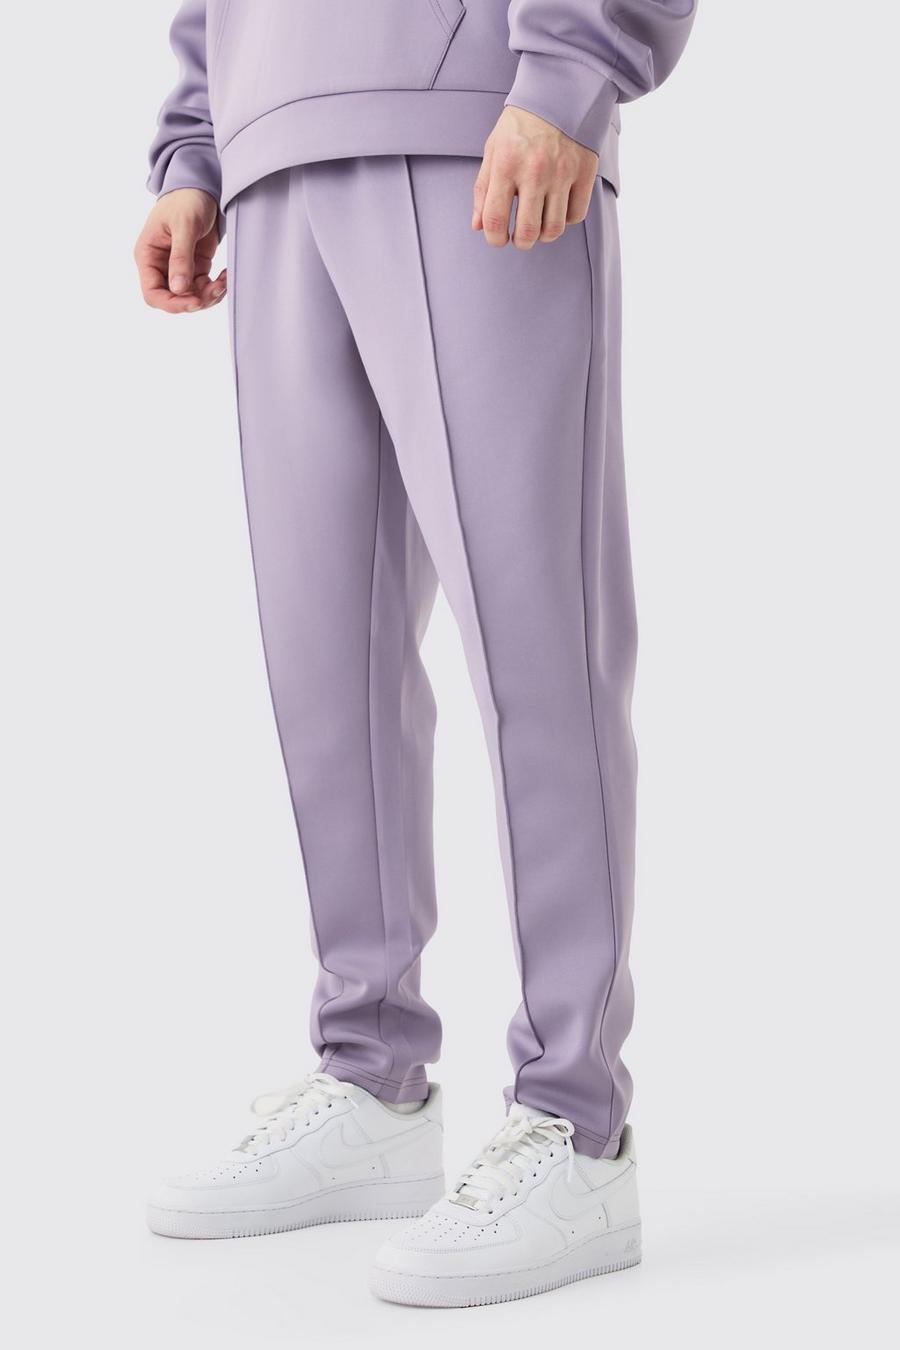 Pantaloni tuta Tall affusolati alla caviglia in Scuba, Purple